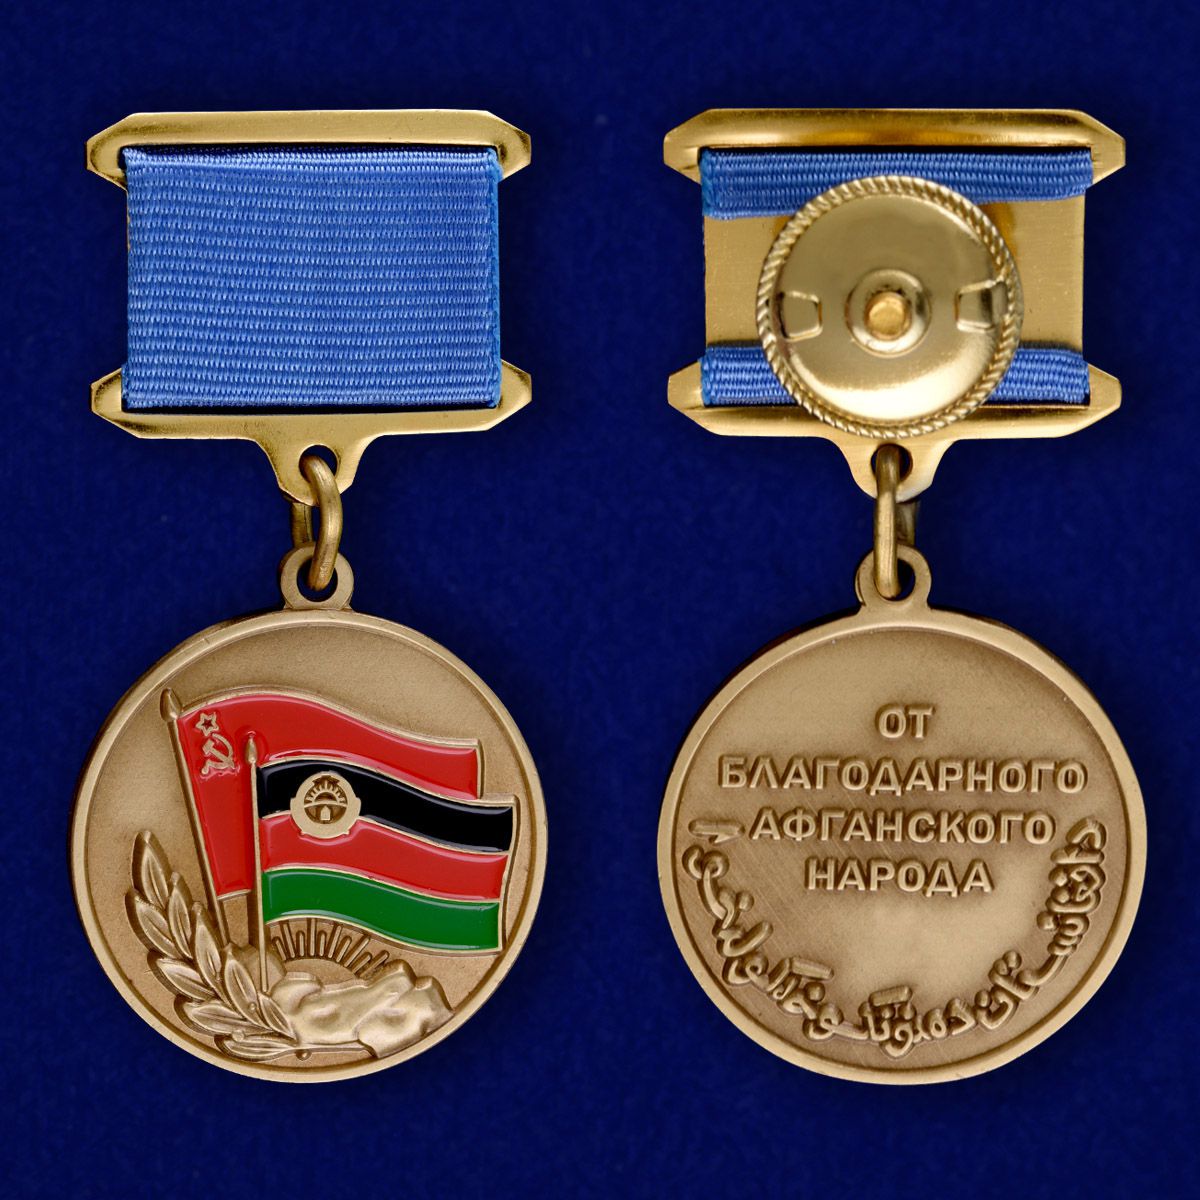 Аверс и реверс медали "От благодарного афганского народа"